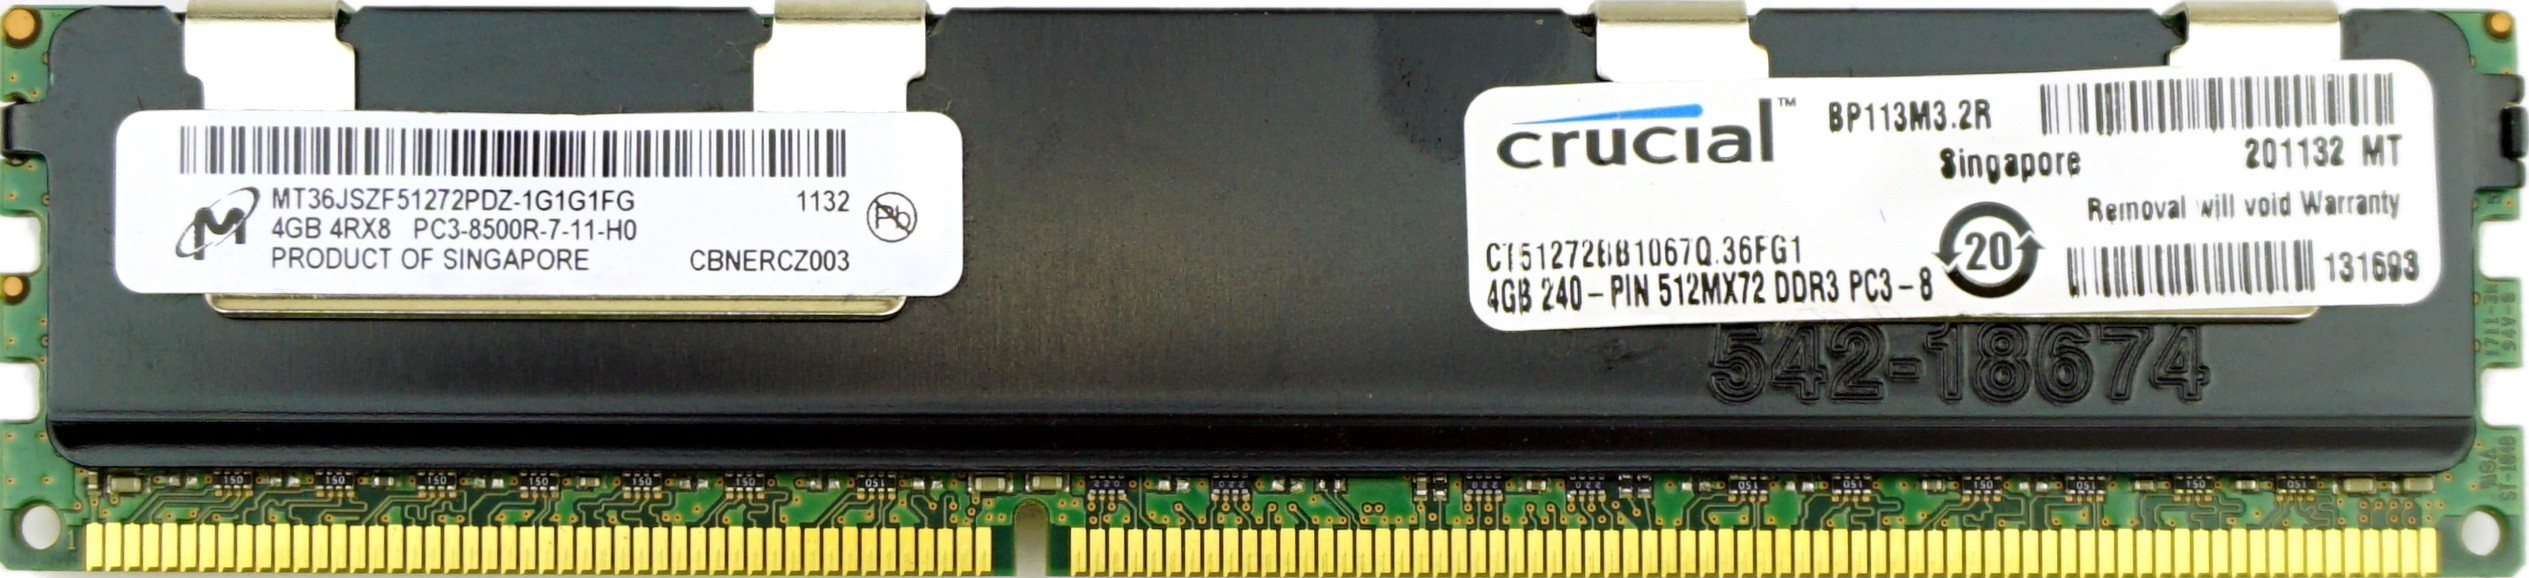 Micron - 4GB PC3-8500R (DDR3-1066Mhz, 4RX8)